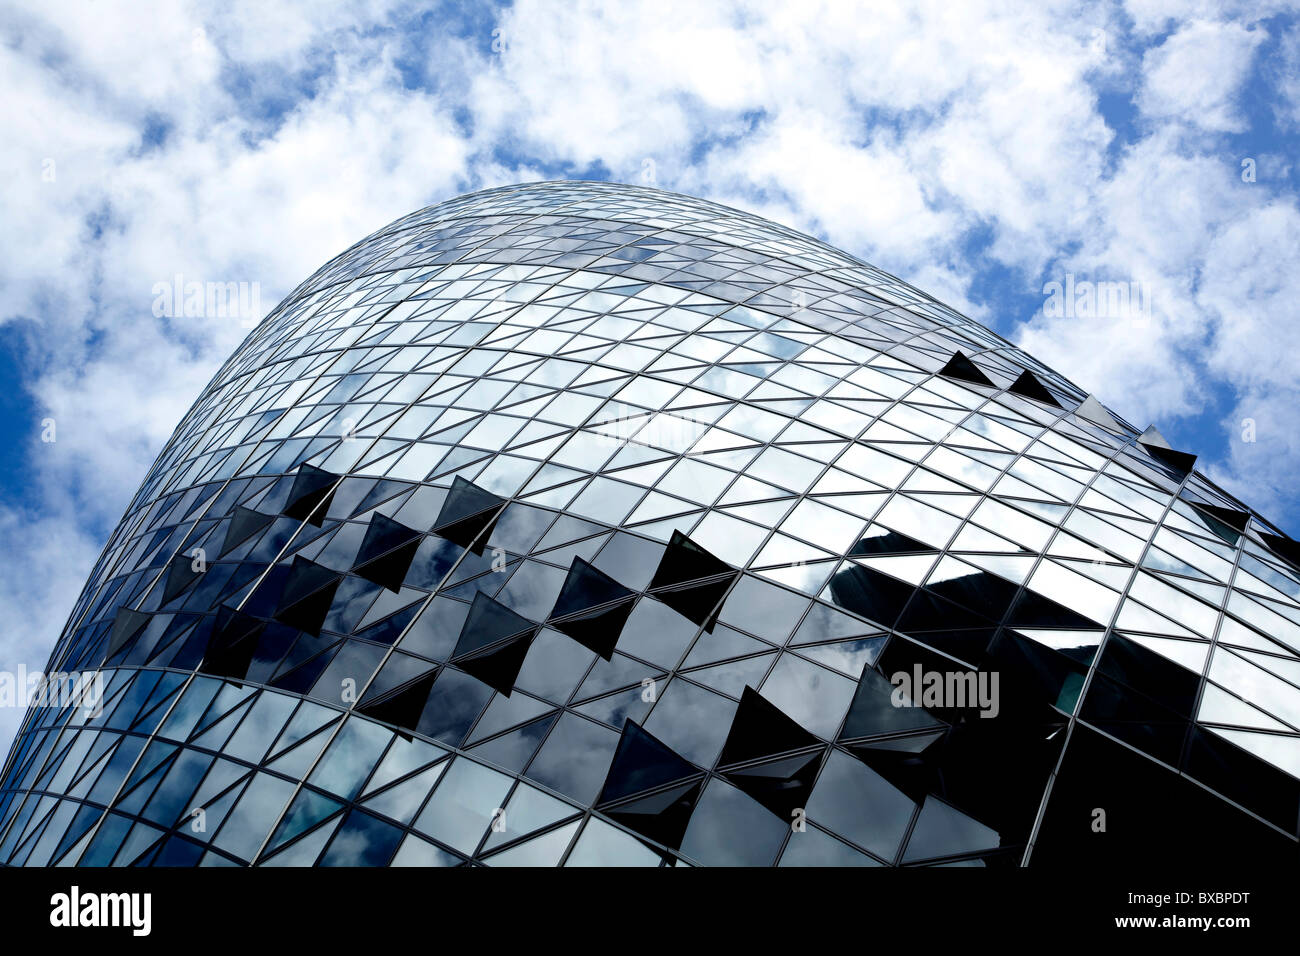 Hauptsitz der Swiss Re Versicherung, Swiss Re Gebäude, Swiss Re Tower in London, England, Vereinigtes Königreich, Europa Stockfoto